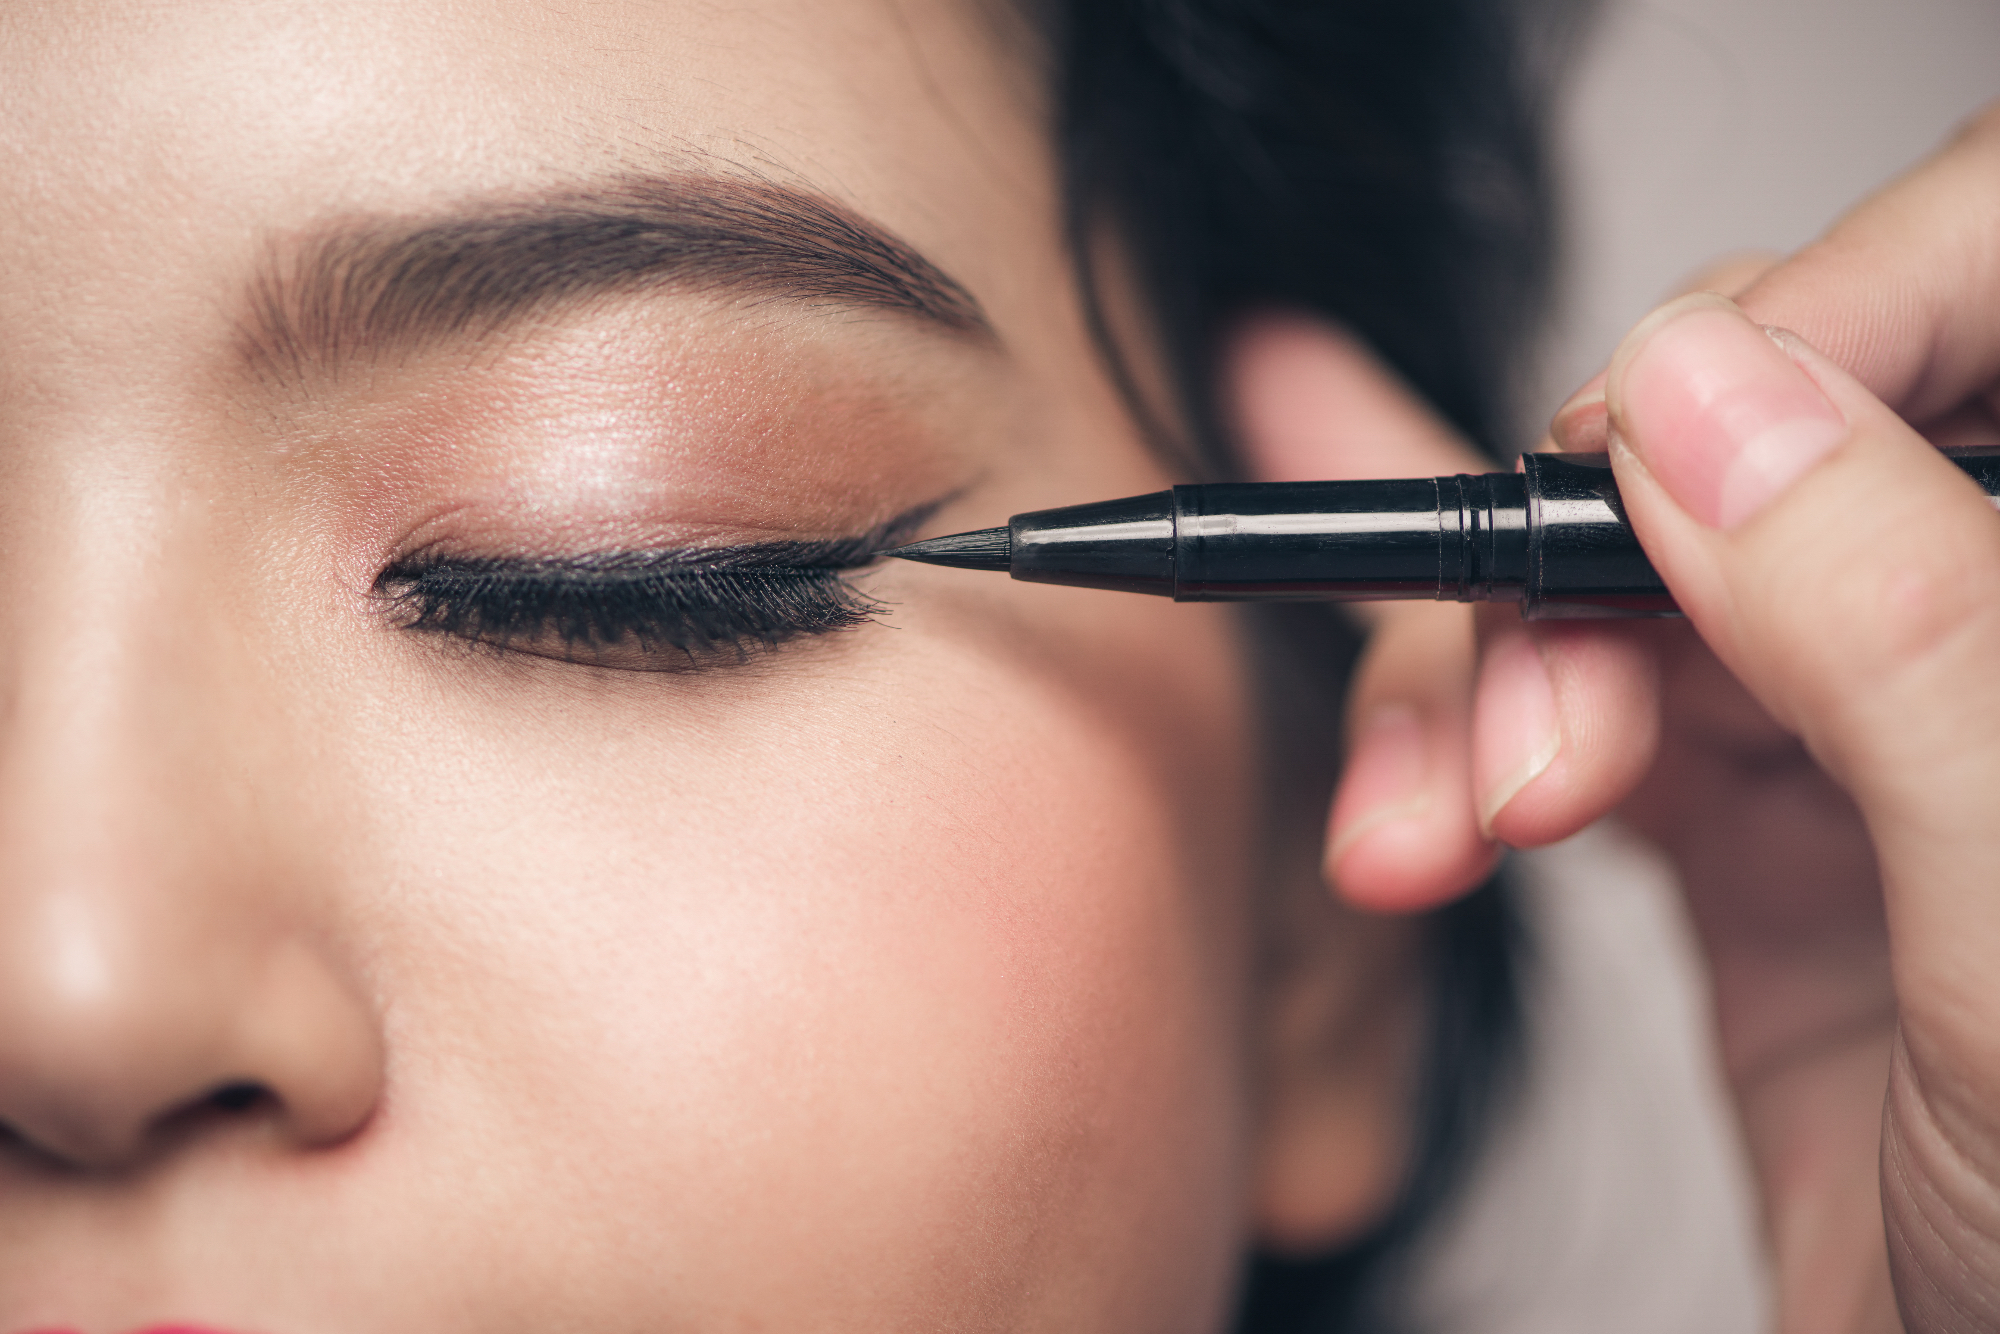 Kakovosten eyeliner za učinkovito nanašanje